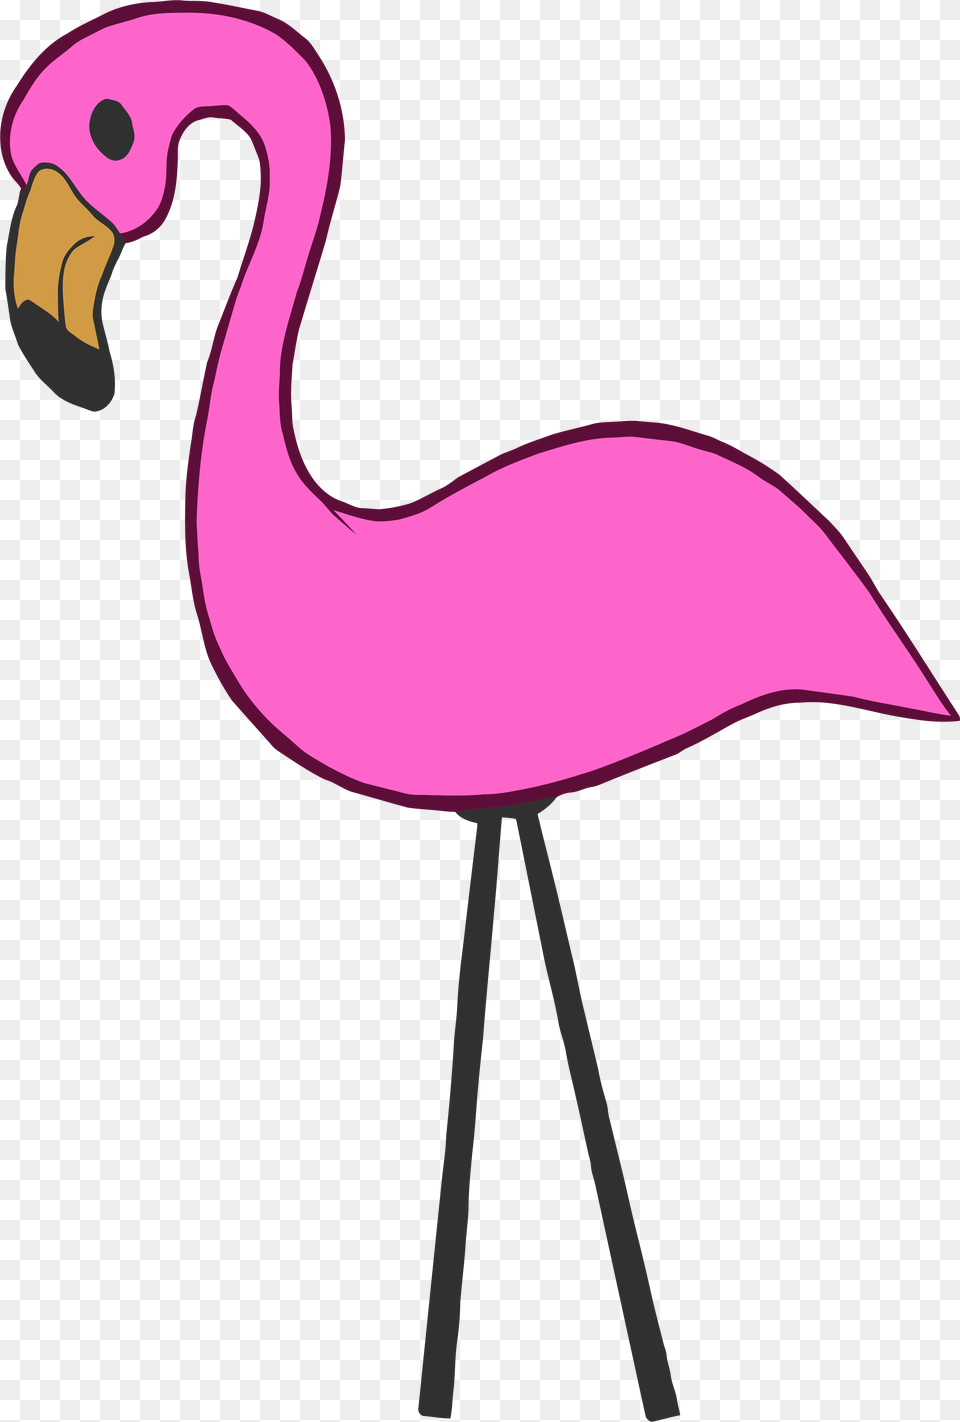 Pink Flamingo Hot Pink Flamingo Clipart, Animal, Bird, Fish, Sea Life Png Image